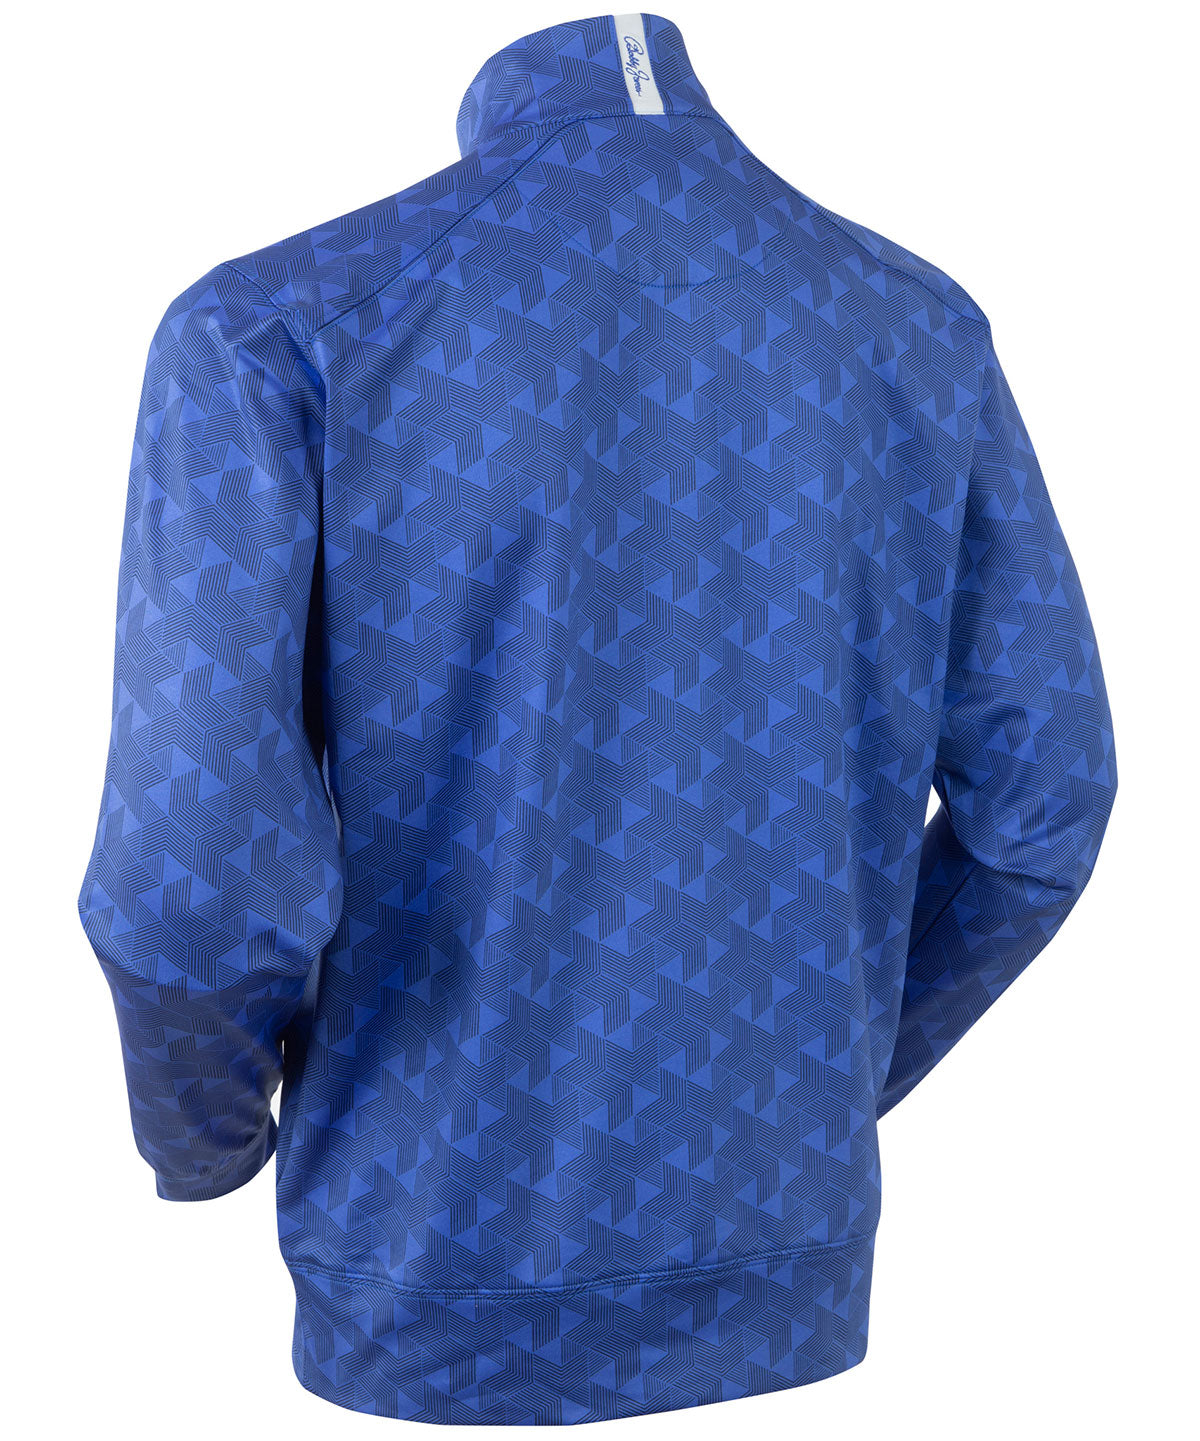 Louis Vuitton Cotton Velour Monogram Logo Blue Velvet Teal Blouson Jacket  SZ L